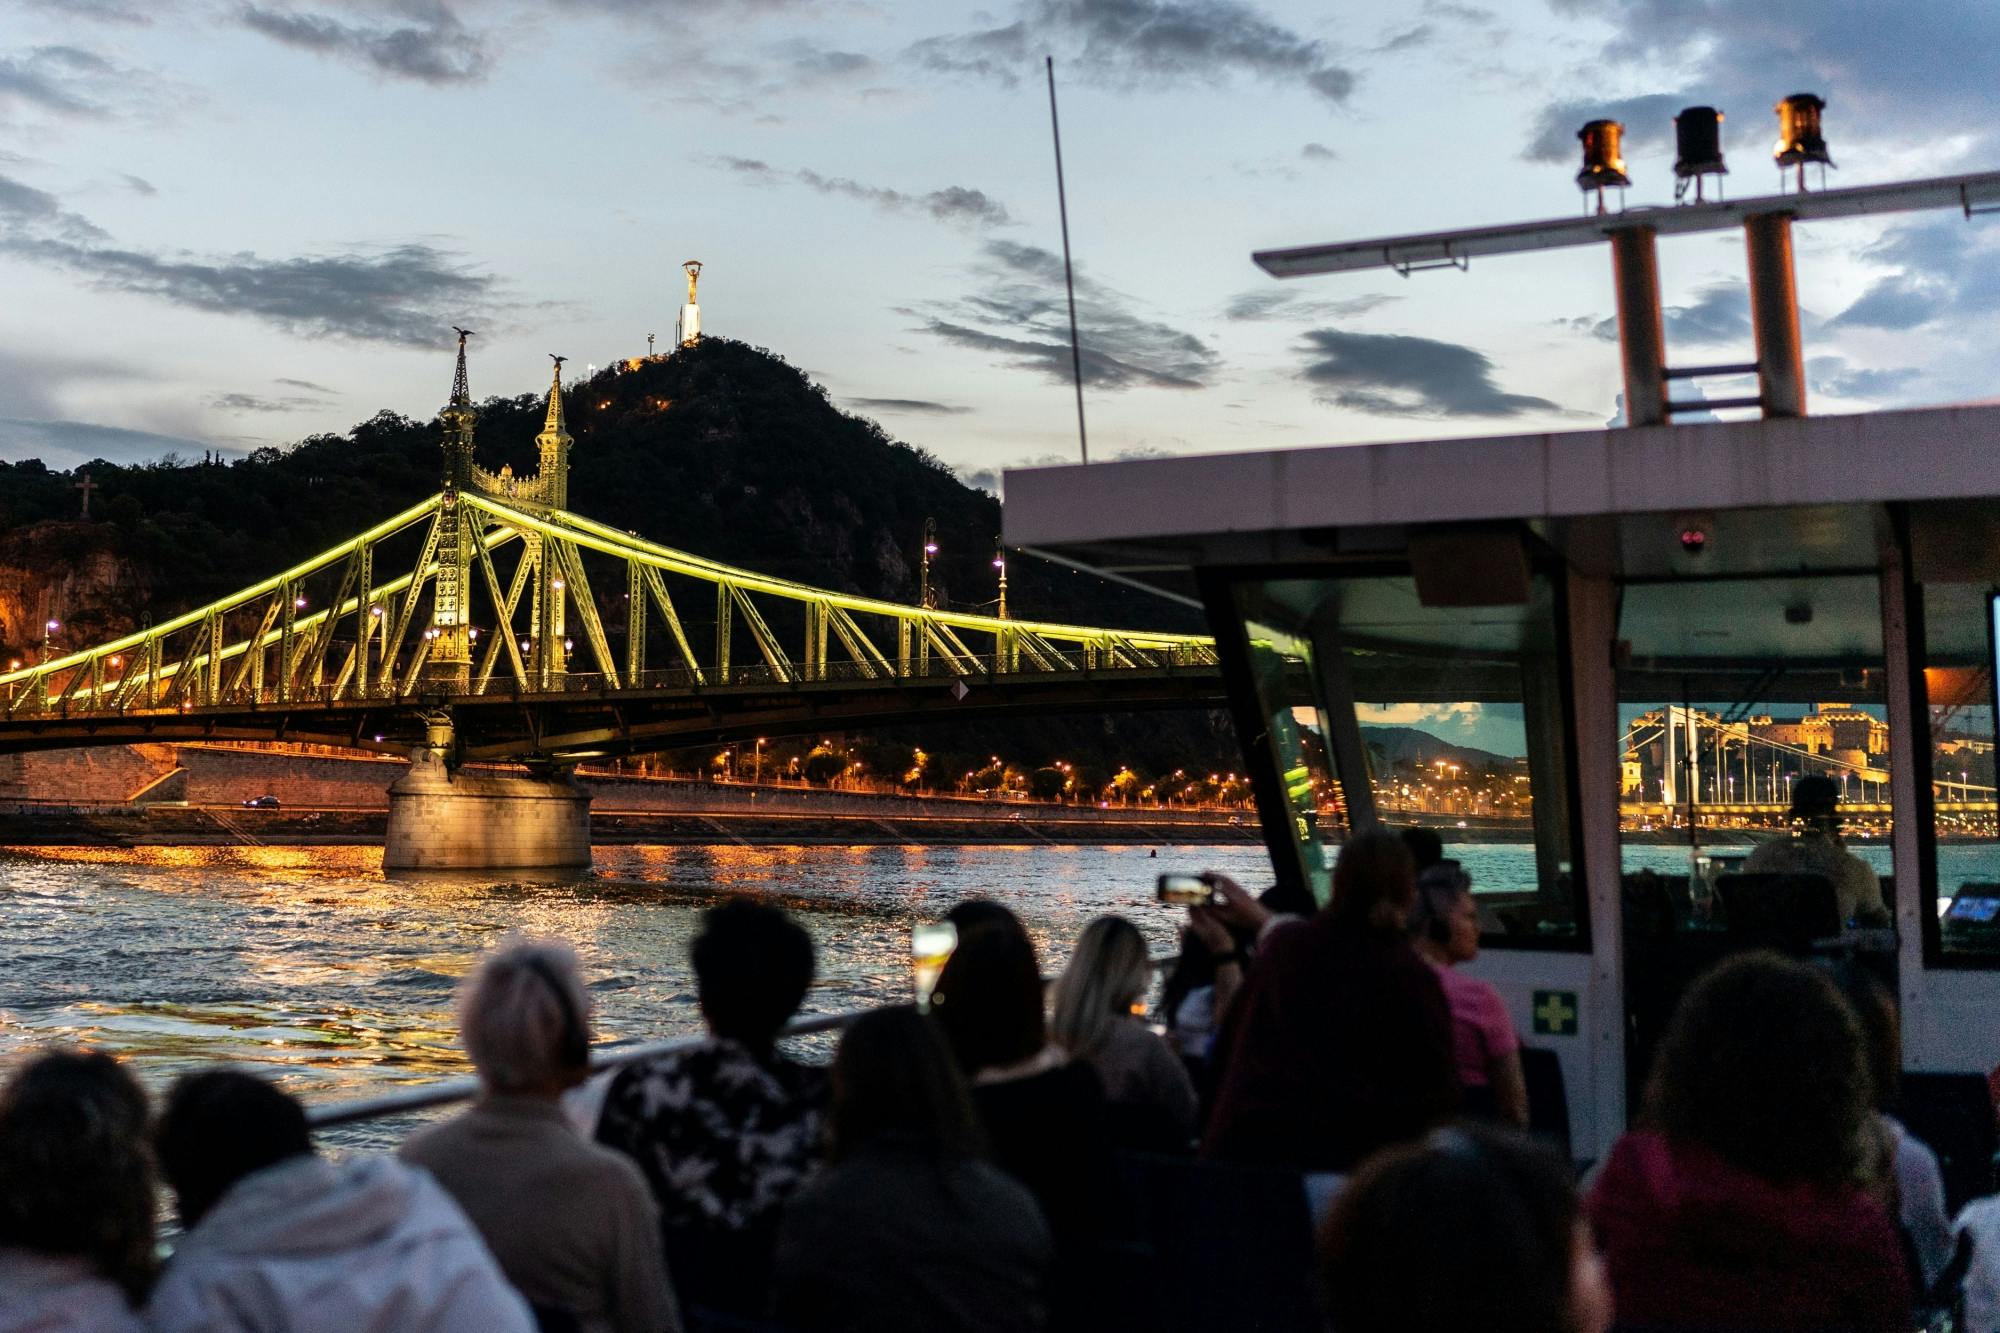 Crucero turístico nocturno de 1 hora en Budapest